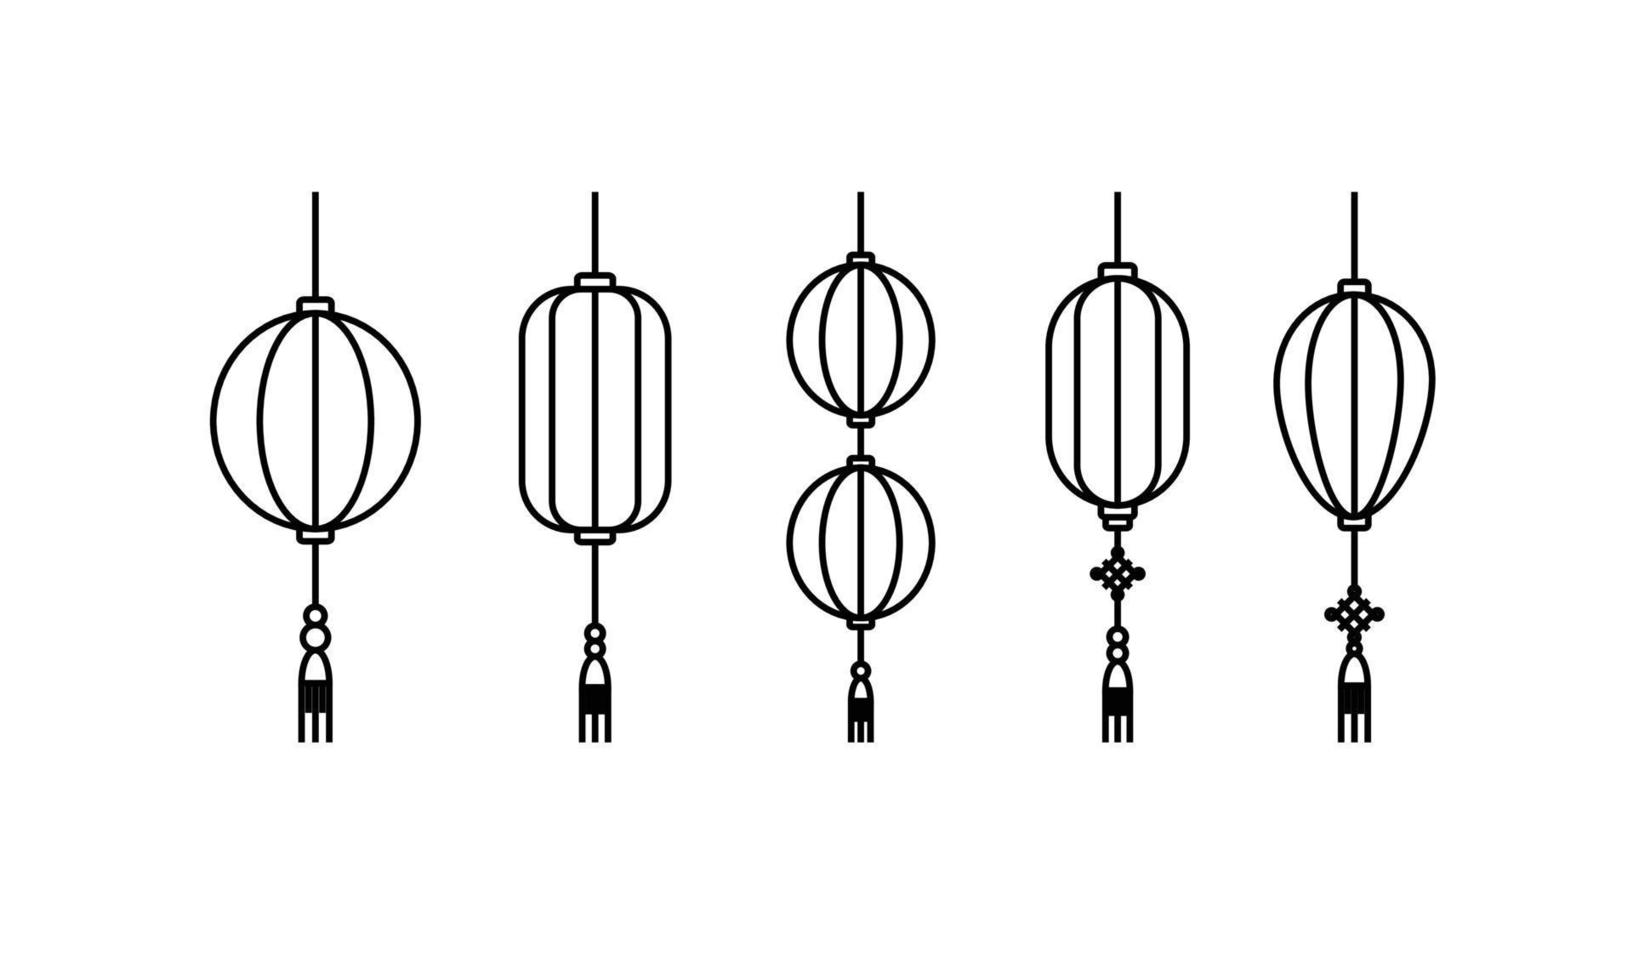 lantaarns illustraties. set chinese symbolen voor vieringen van culturele evenementen. vector